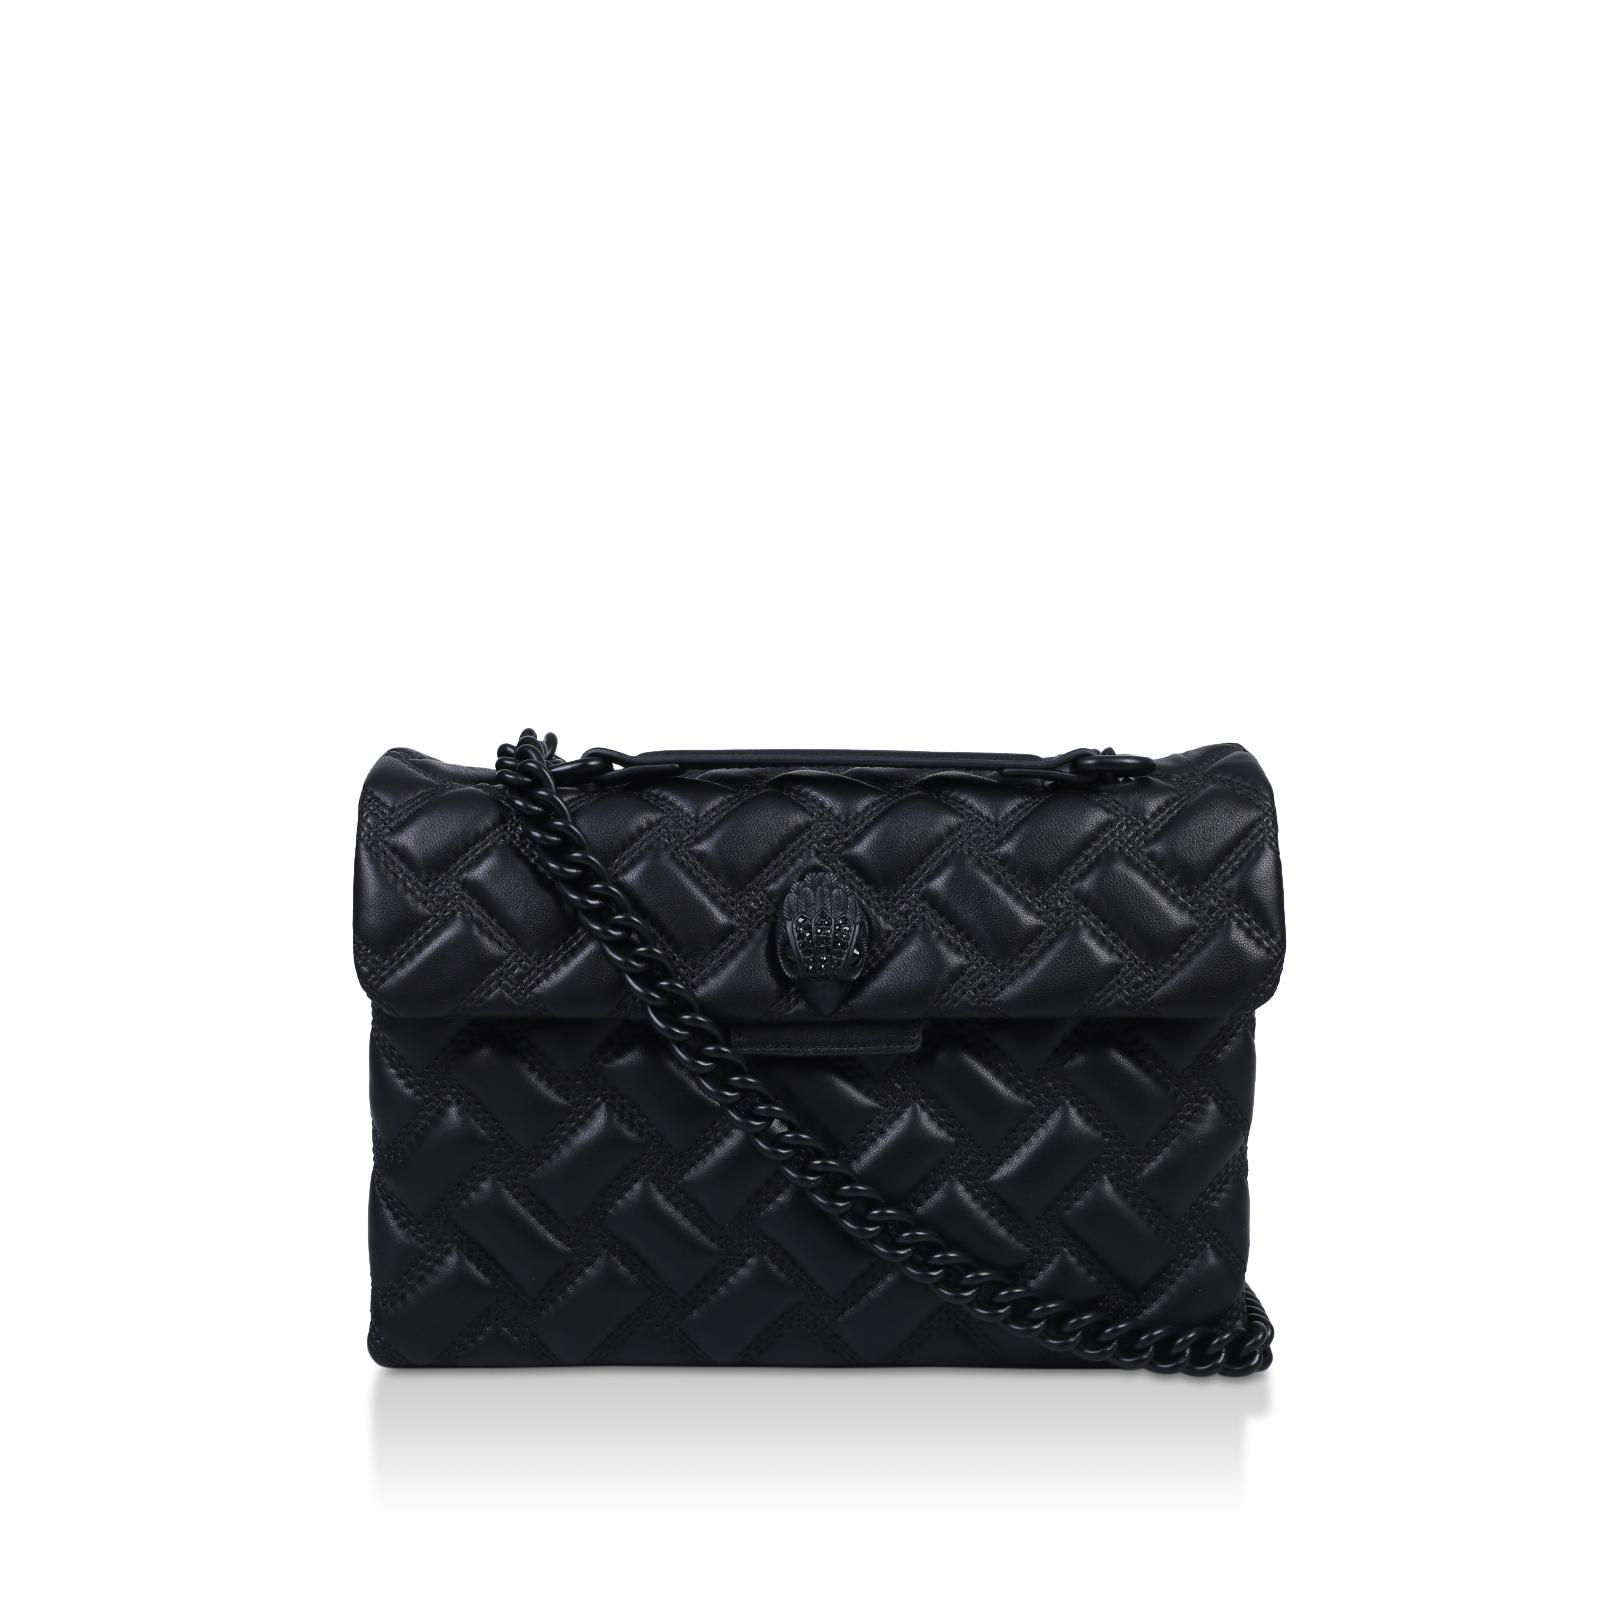 KENSINGTON BAG DRENCH Black Quilted Leather Shoulder Bag by KURT GEIGER LONDON